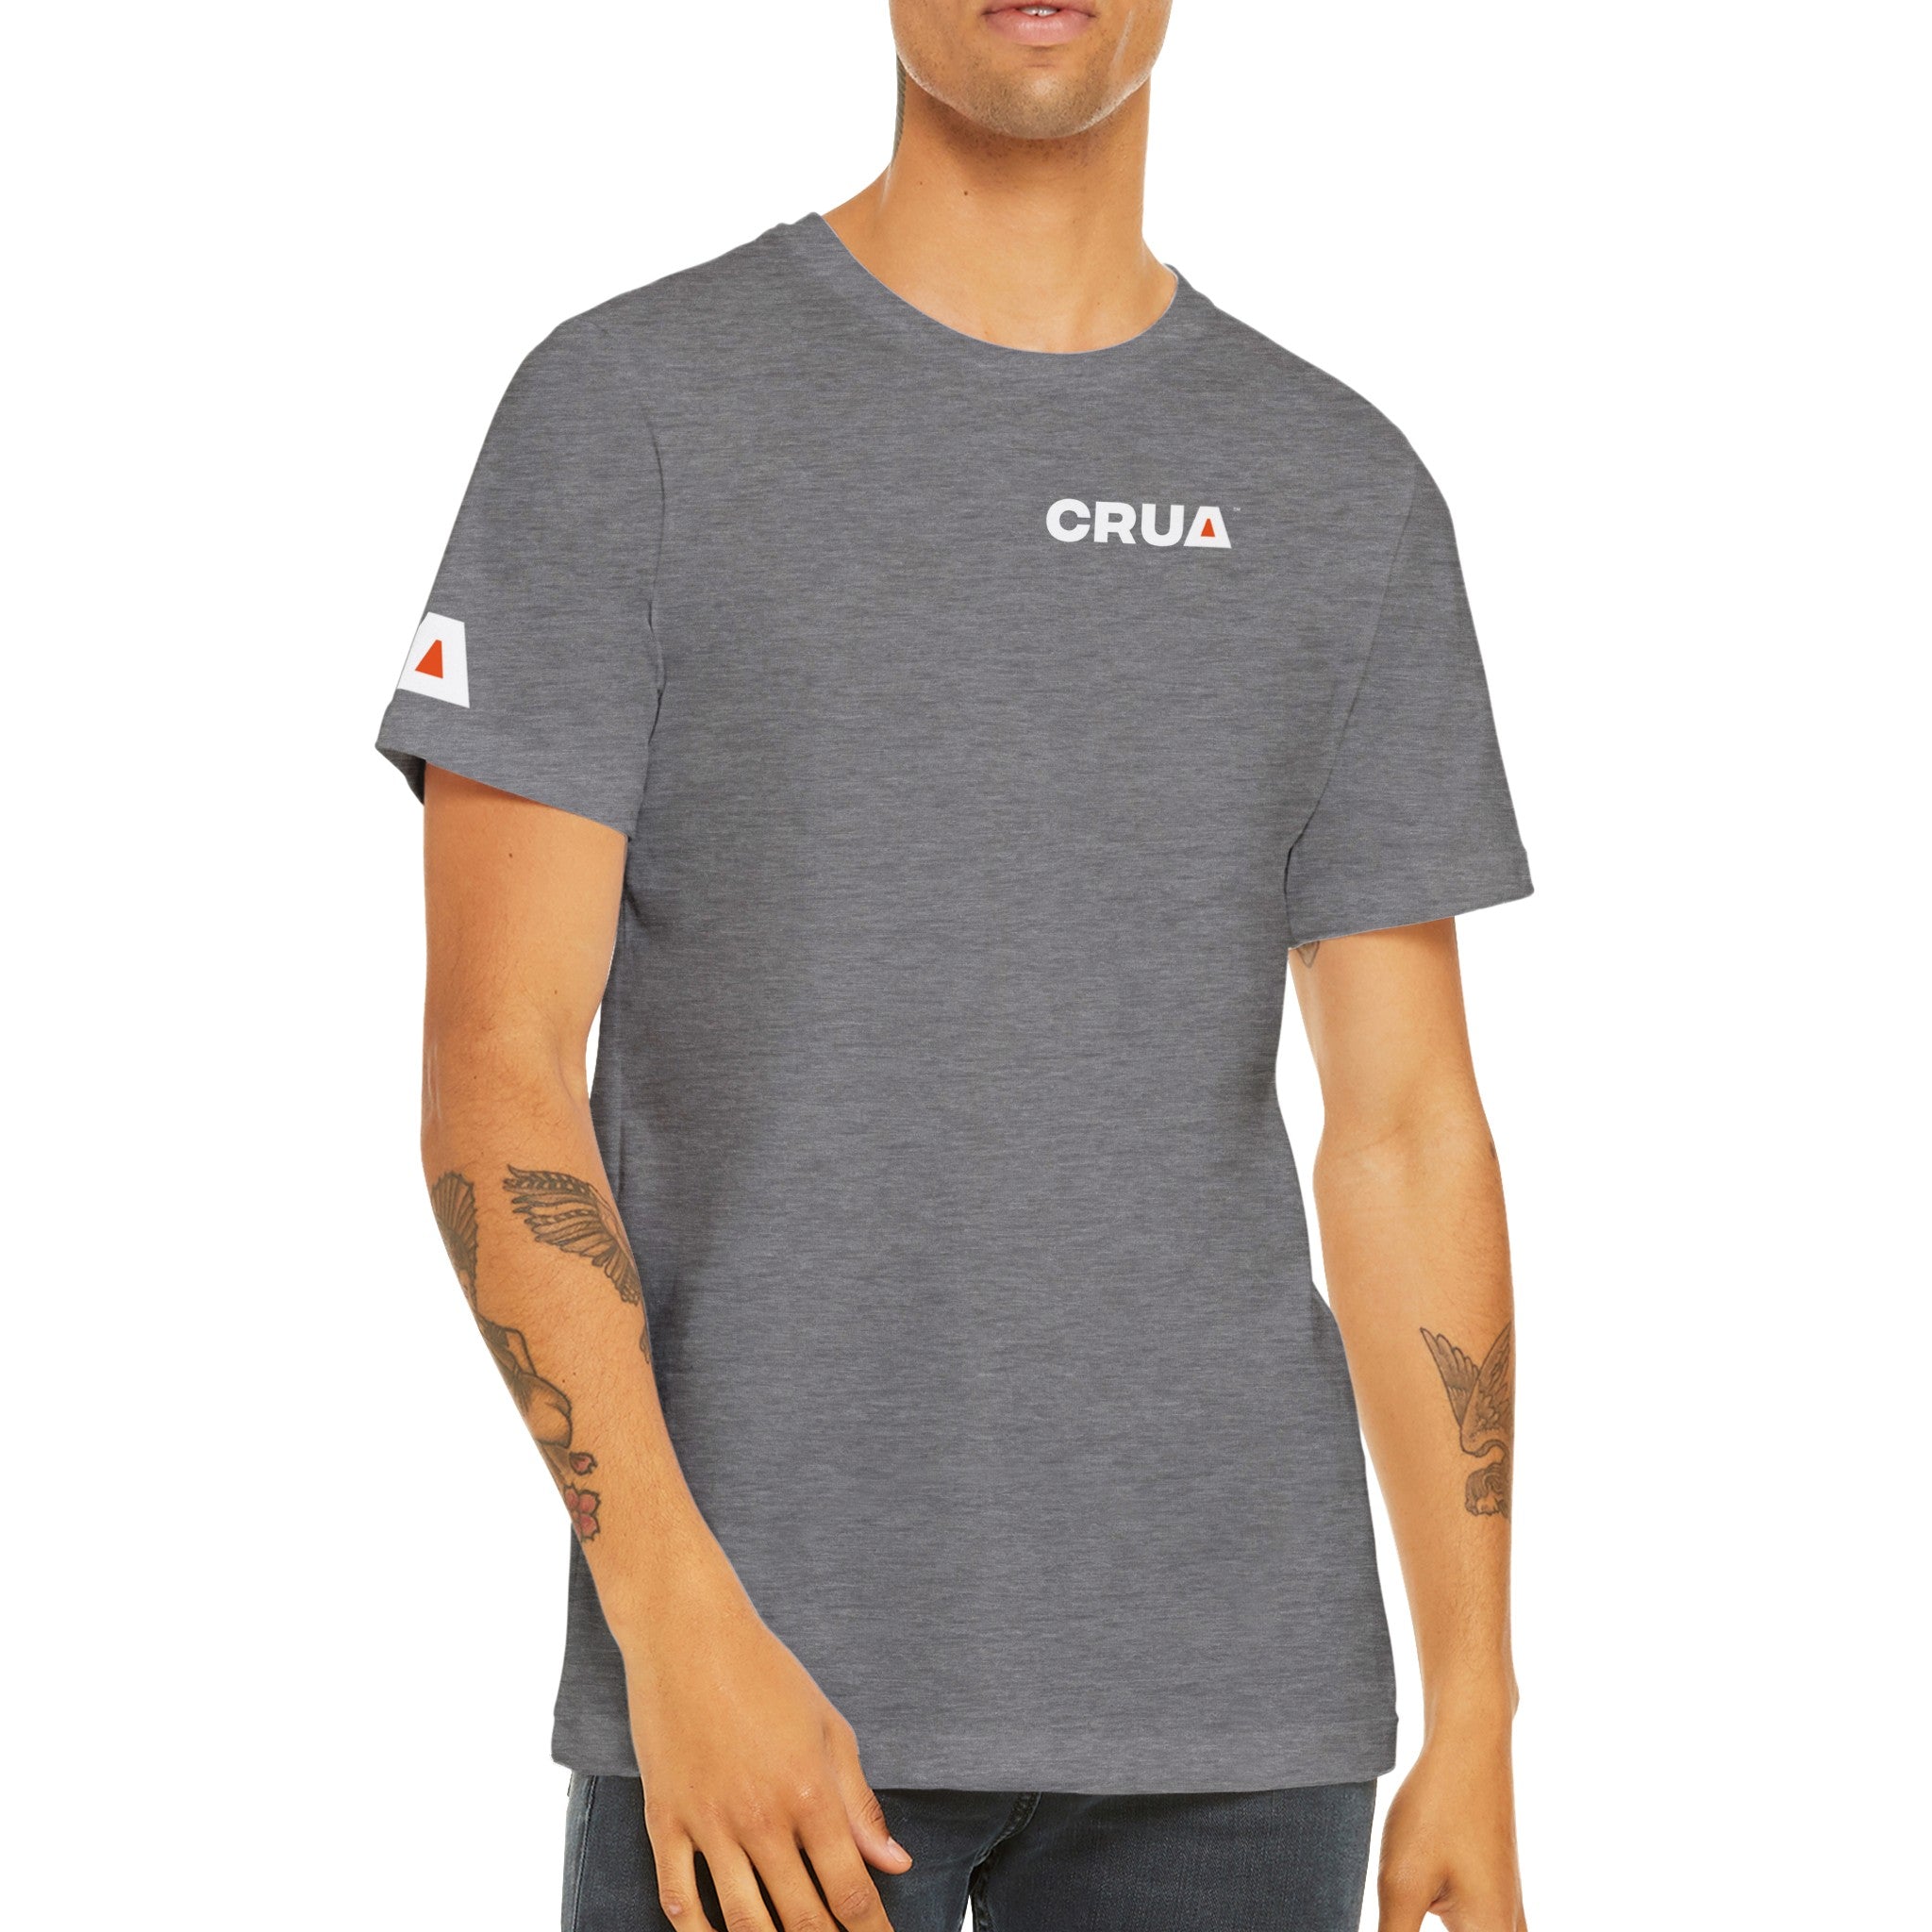 CRUA Premium Unisex Crewneck T-shirt